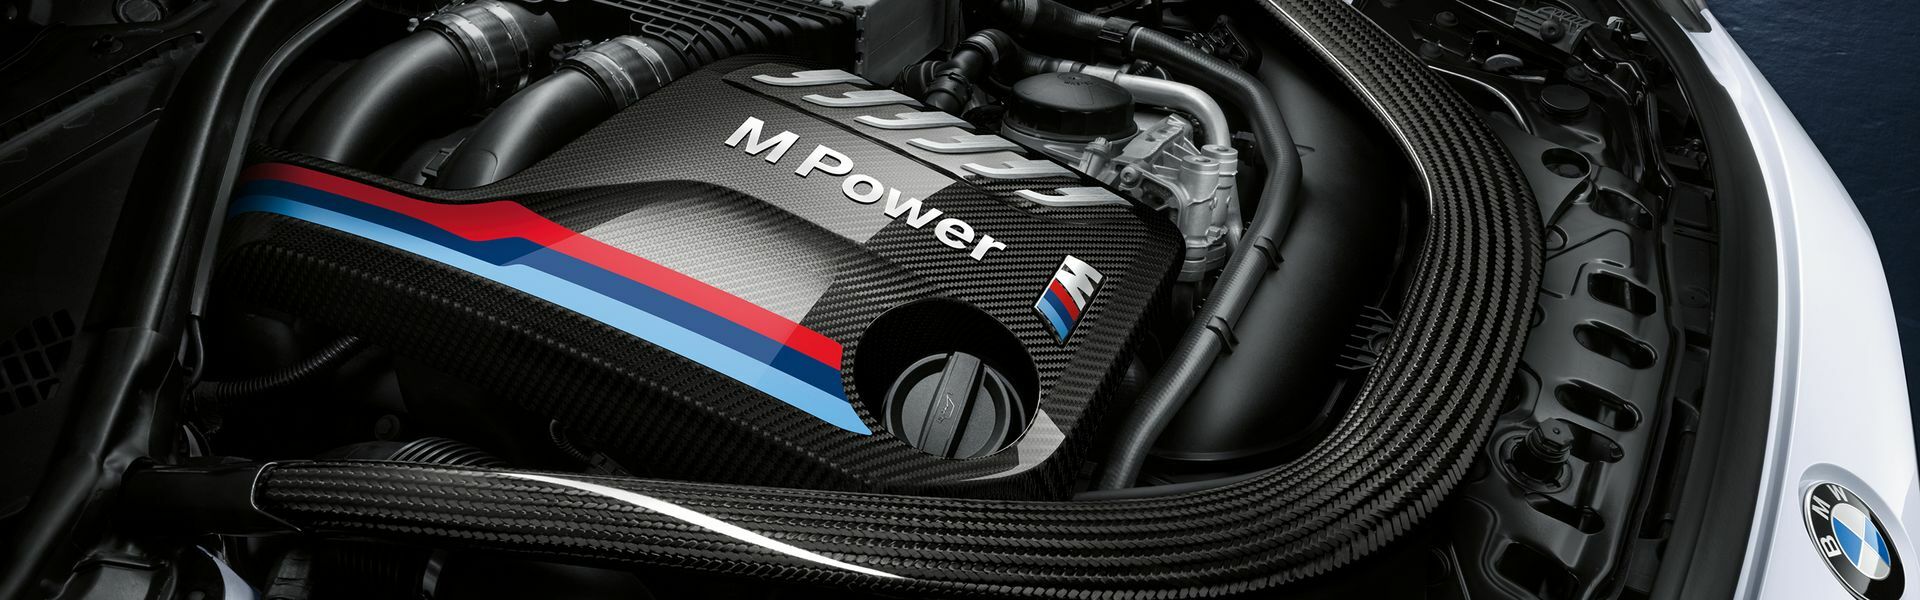 Zvýšení výkonu/ Softwarové úpravy/ Drobné performance díly pro automobil BMW 435i F32